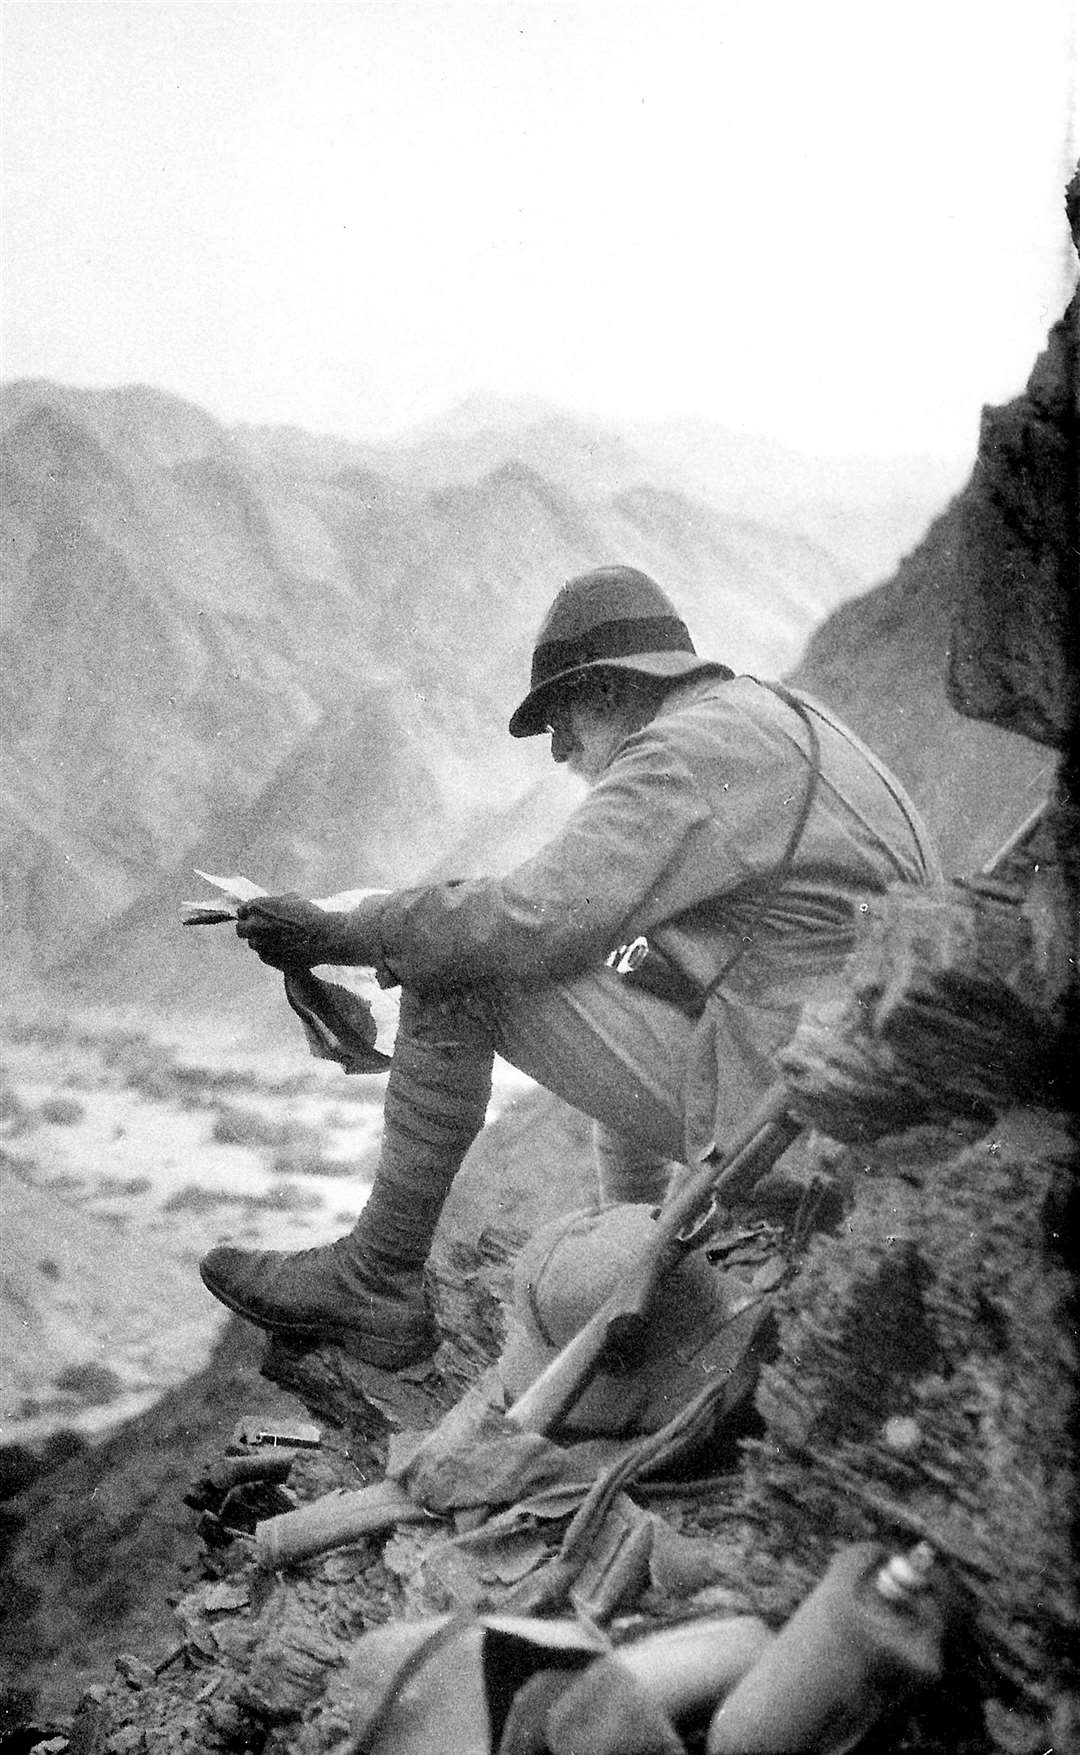 Explorer Percy Powell-Cotton in the Sudan